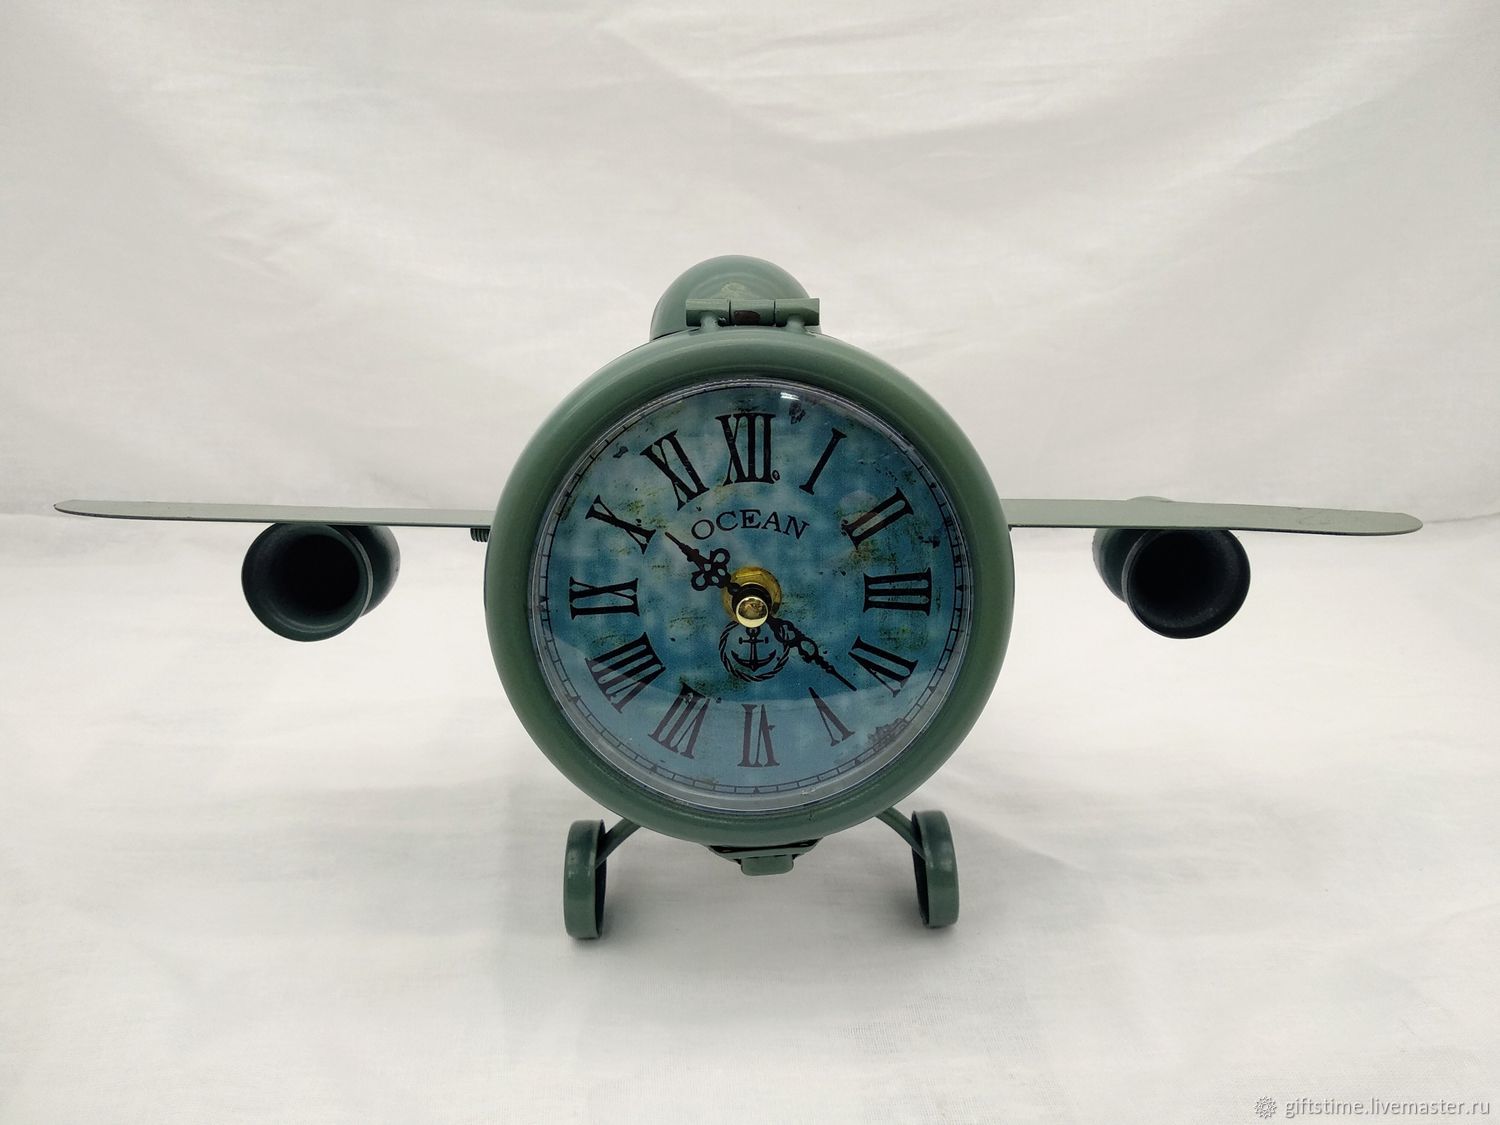 Часы самолет движущиеся. Часы "самолет". Часы Авиация. Часы с самолетиком. Часы настольные самолет.